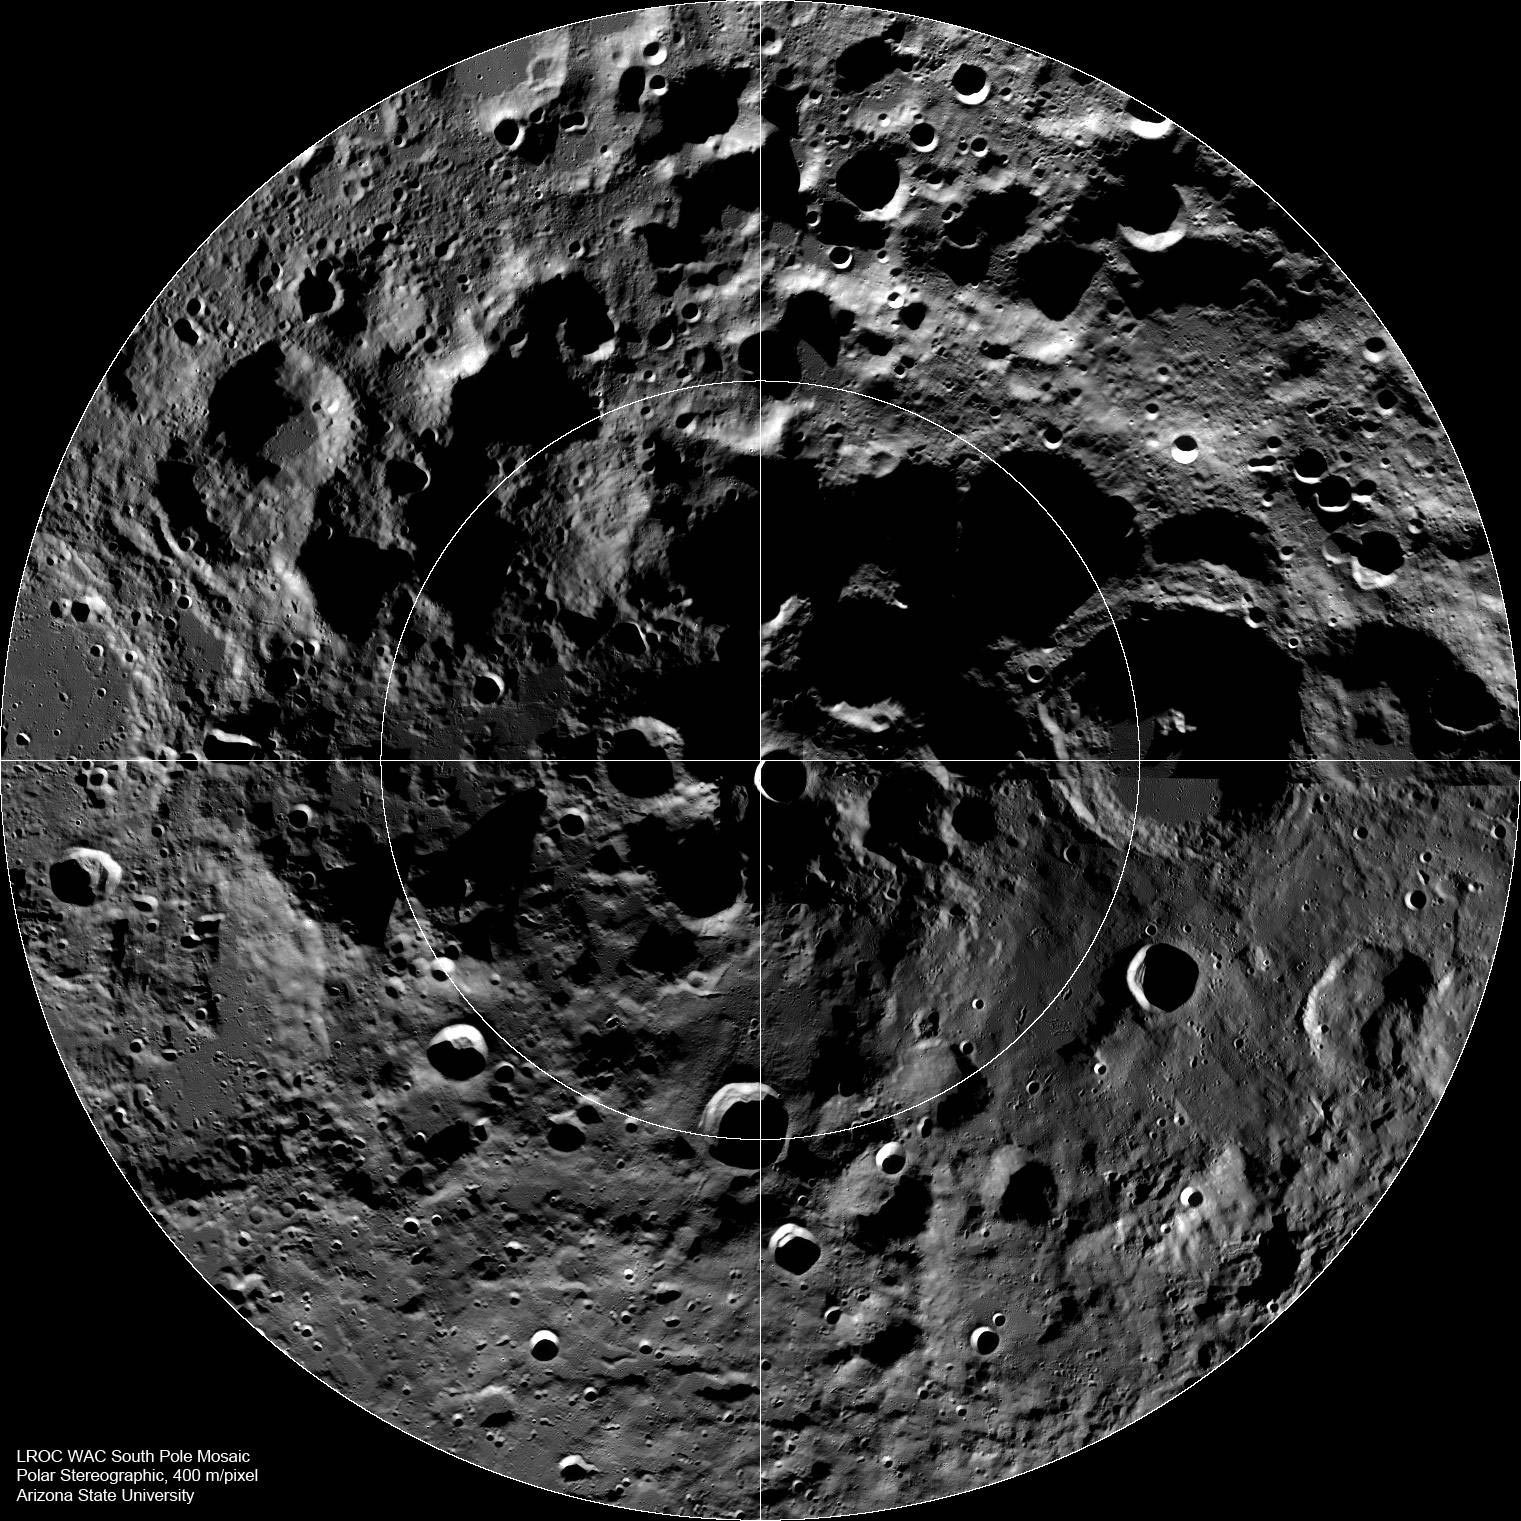 国际天文学联合会(IAU)以北极探险家马修·汉森的名字命名月球南极一个环形山